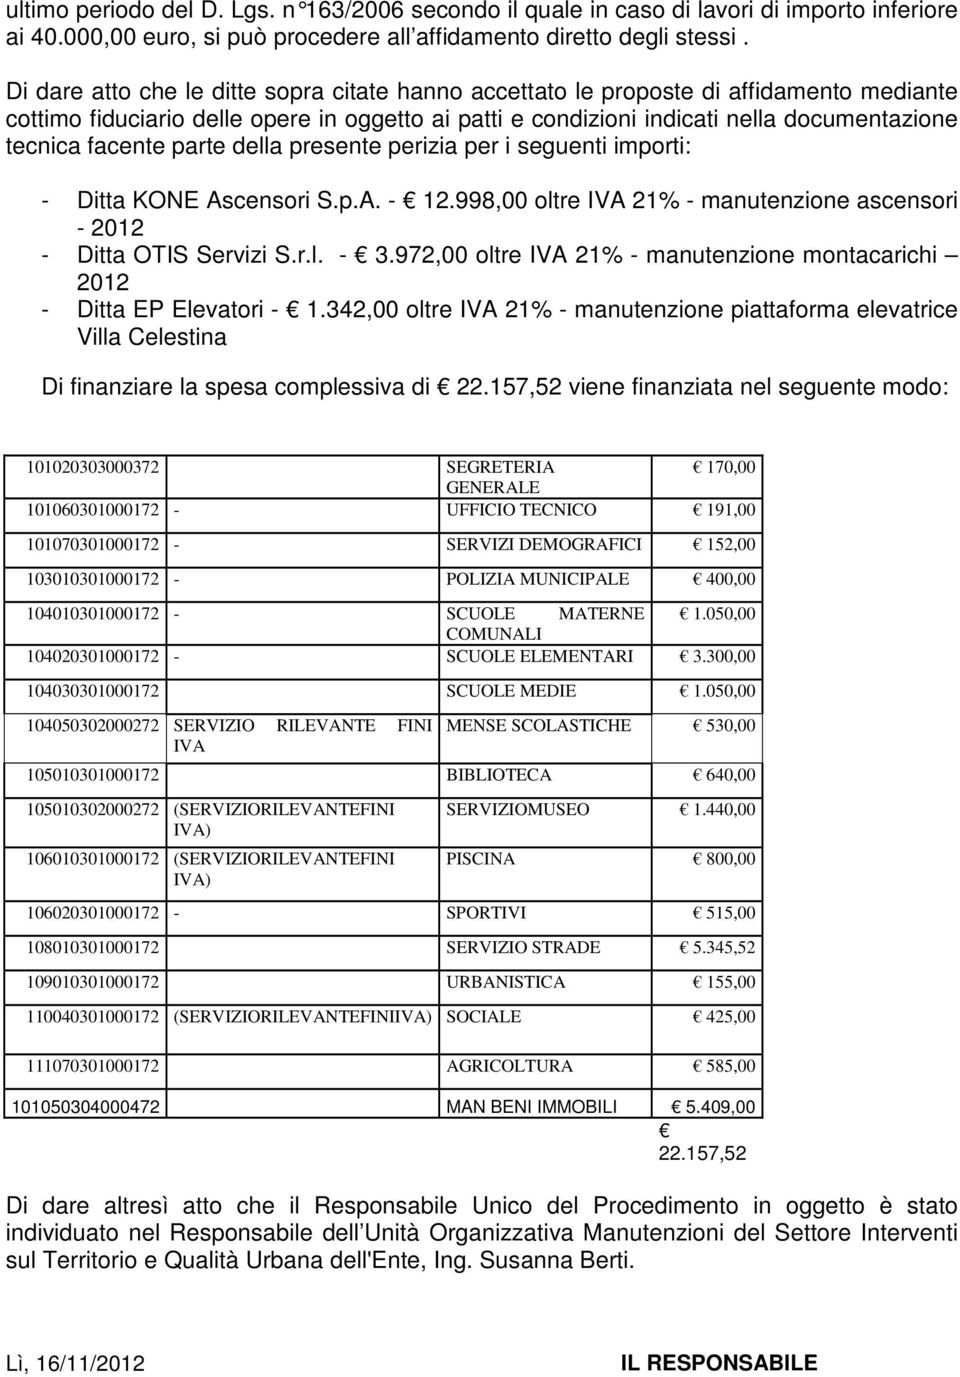 facente parte della presente perizia per i seguenti importi: - Ditta KONE Ascensori S.p.A. - 12.998,00 oltre IVA 21% - manutenzione ascensori - 2012 - Ditta OTIS Servizi S.r.l. - 3.